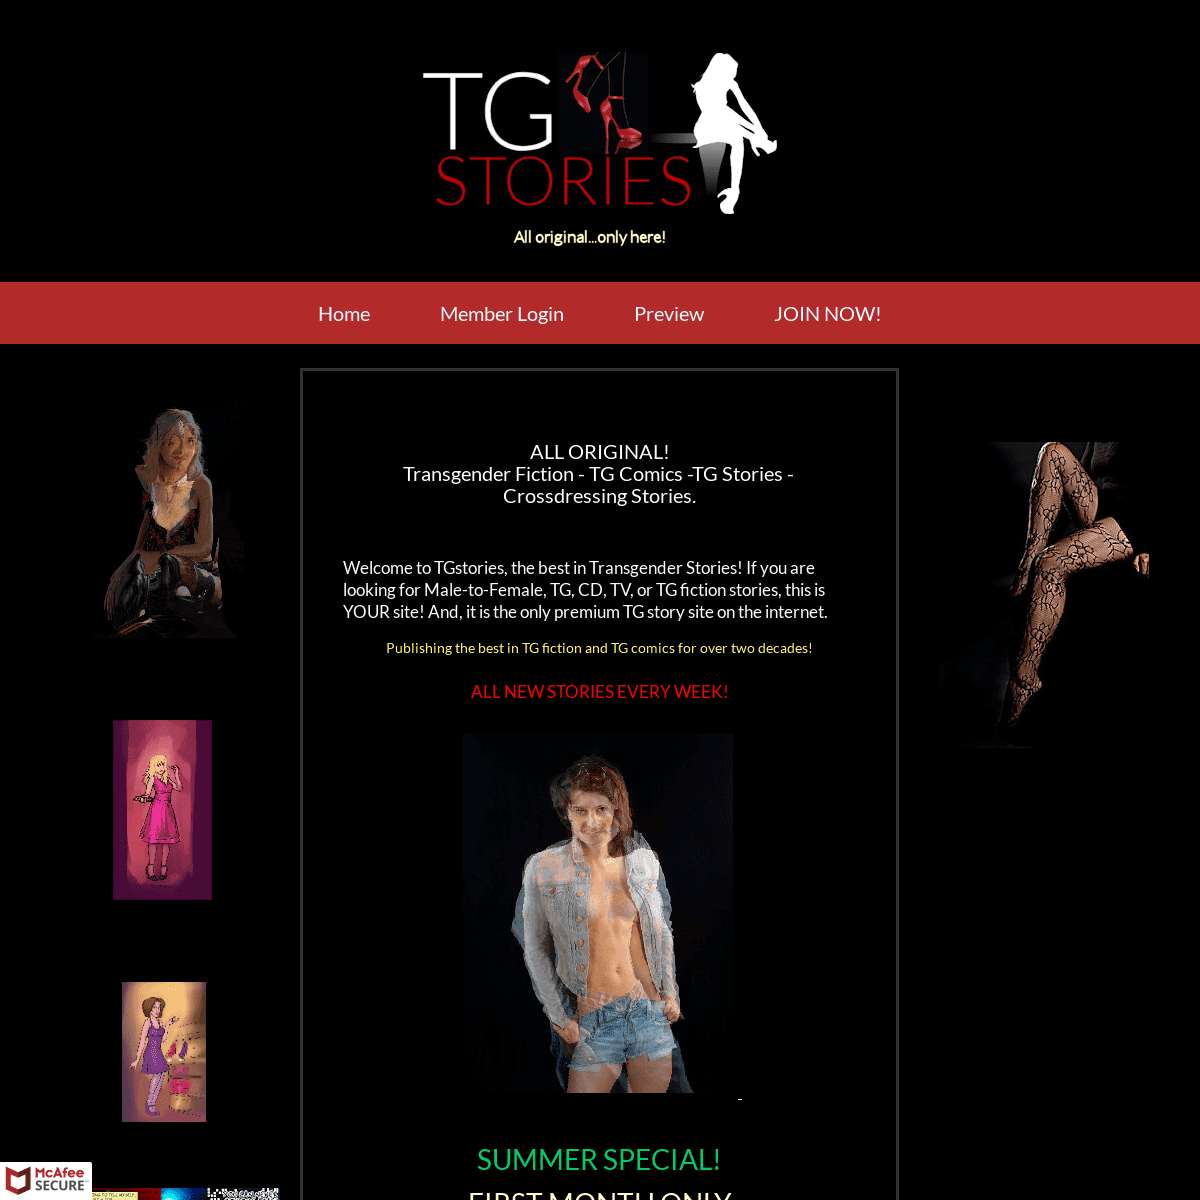 TGstories | TG Stories | Transgender Fiction | TGcomics | Crossdressing Stories